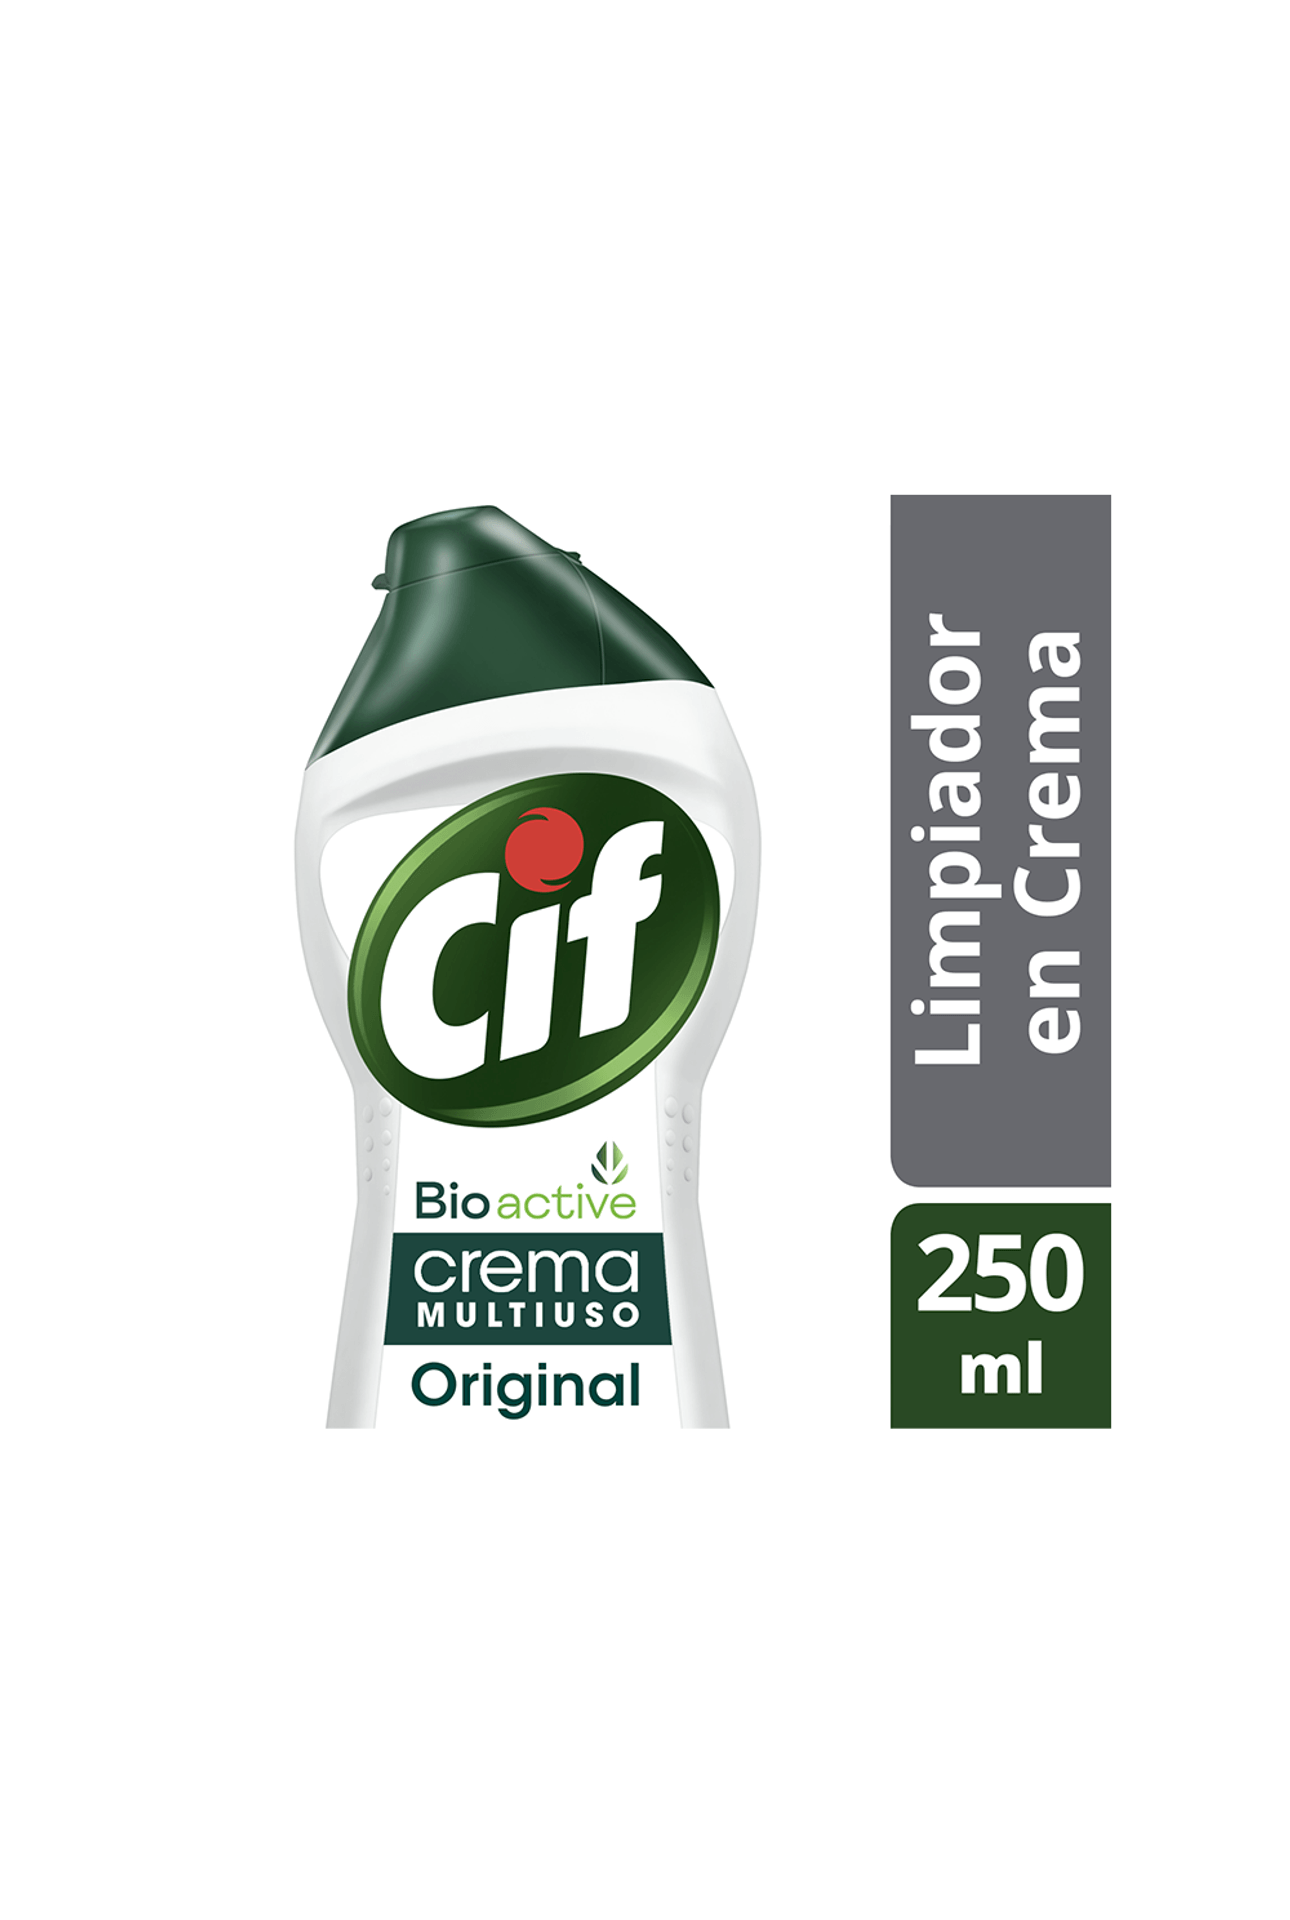 Limpiador en Crema Cif Bioactive Original x 250 ml - farmaciasdelpueblo